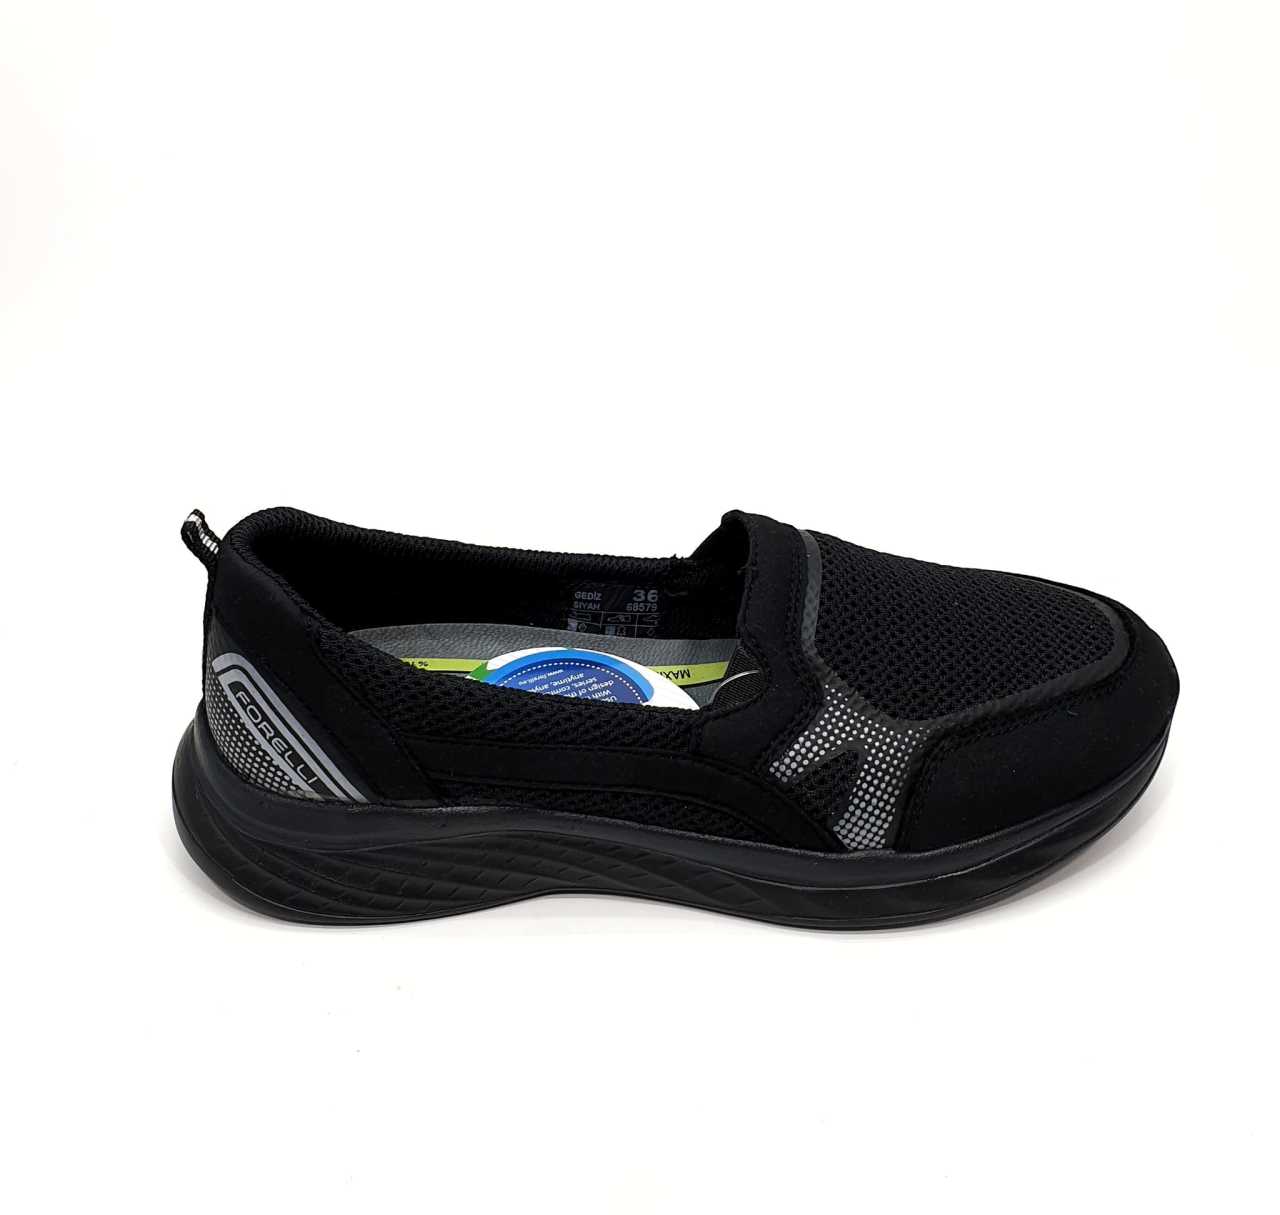 FORELLİ Gediz-G Anatomik Siyah Tekstil Yürüyüş Ayakkabısı